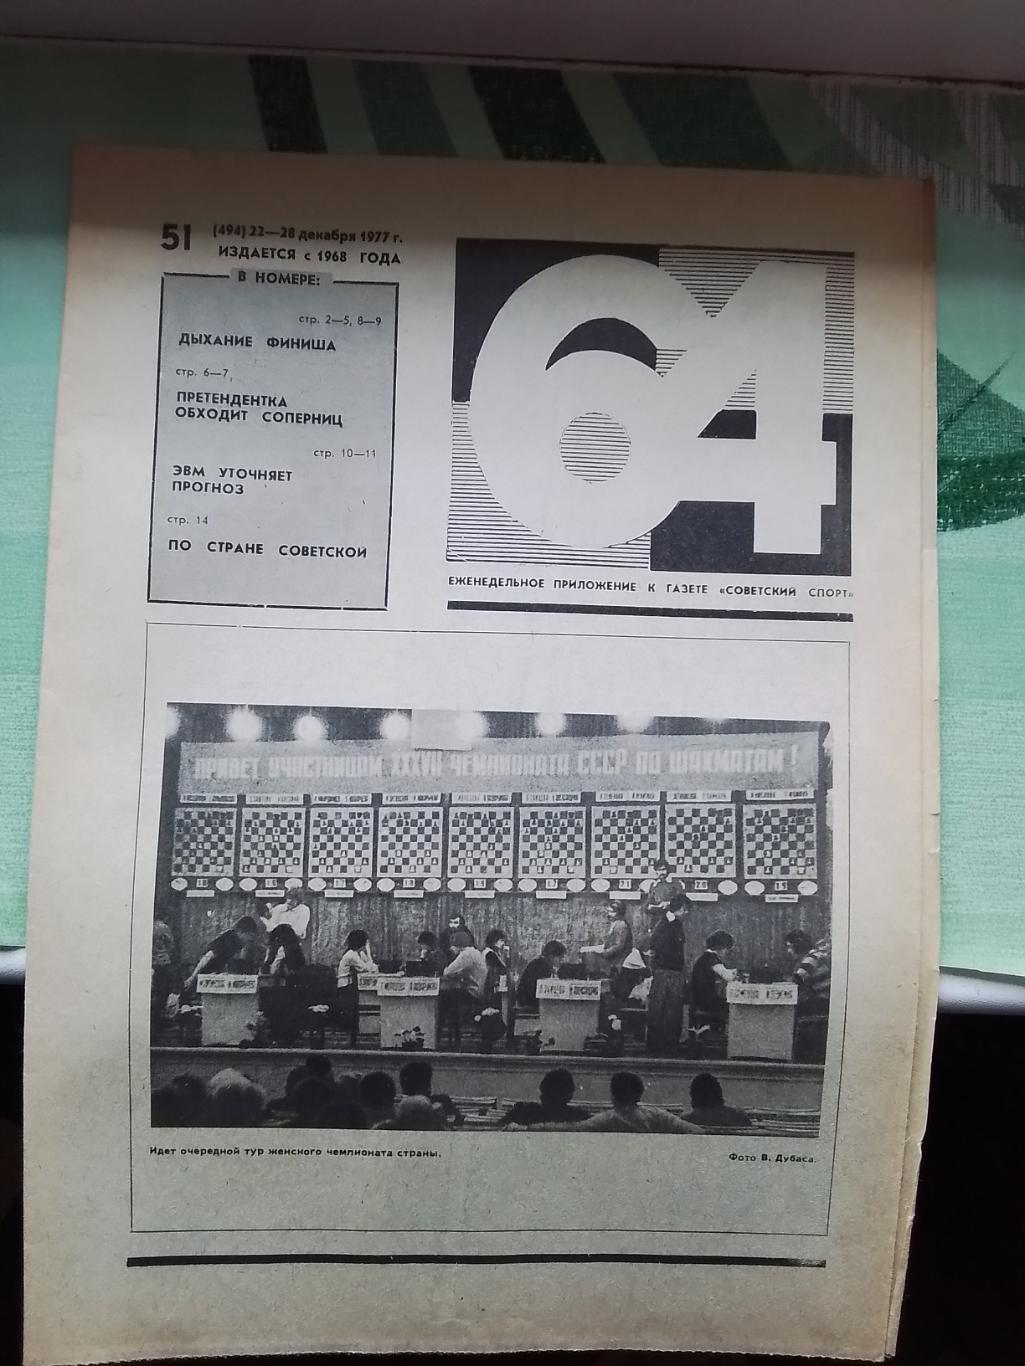 Приложение 64 Шахматы Советский спорт N 51 (494) 22-28.12. 1977